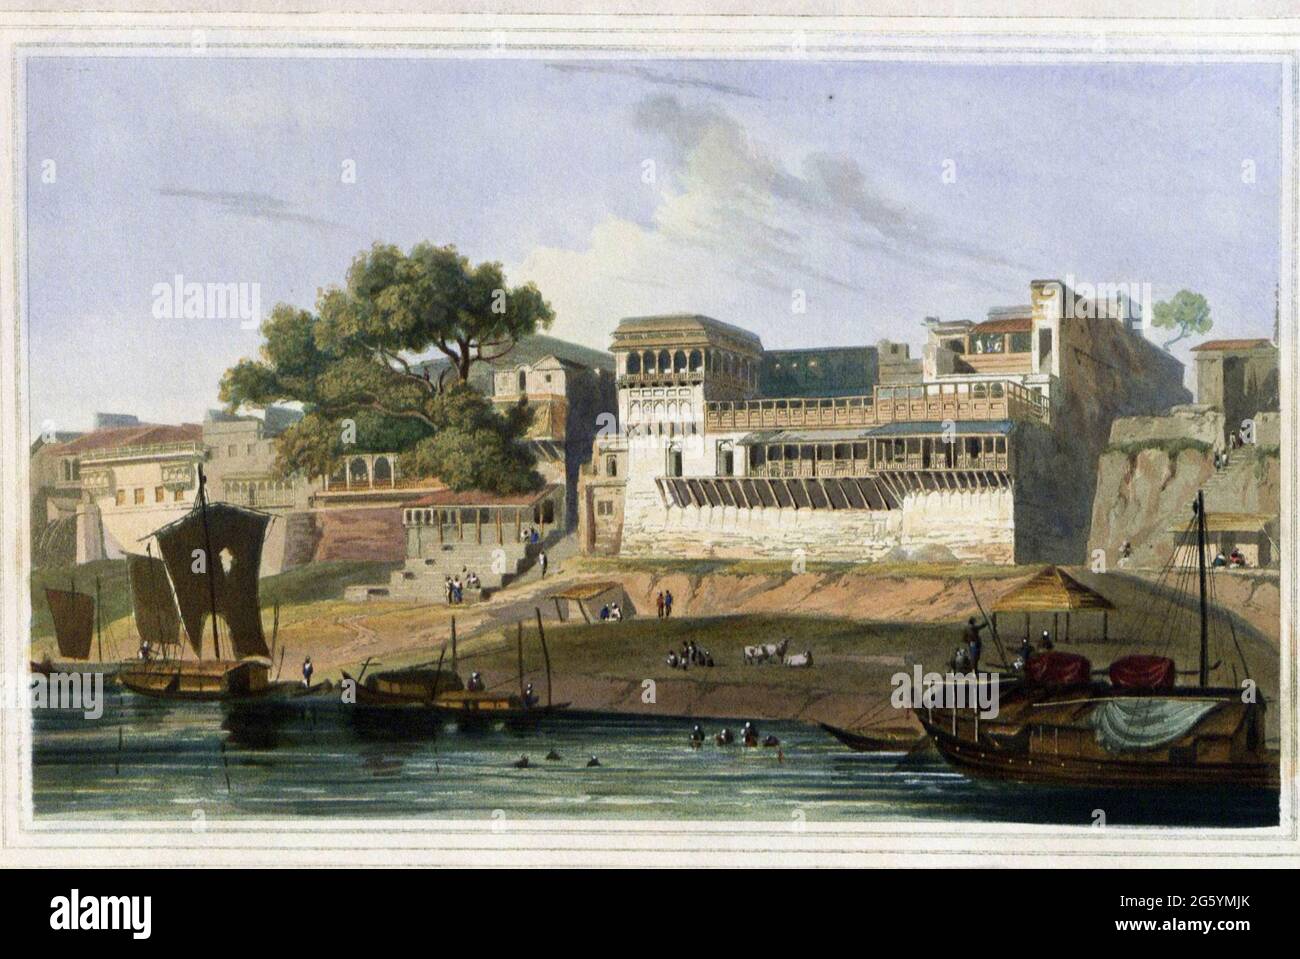 Parte della città di Patna, sul fiume Gange, novembre 1795 la grande e popolosa città di Patna si trova nella provincia di Bahar. Le garette, o scalini che conducono dal fiume, sono qui molto numerose, e sono destinate al vantaggio della merce, così come la convenienza degli Hindoos, i cui doveri religiosi li obbligano frequentemente a eseguire abluzioni nel fiume sacro Gange. L'edificio più grande è la casa di un mercante Hindoo, ed è un esempio dello stile generale degli edifici sul lato del fiume abitati da uomini di quella classe. Dal libro ' scenario orientale: Cento e fift Foto Stock